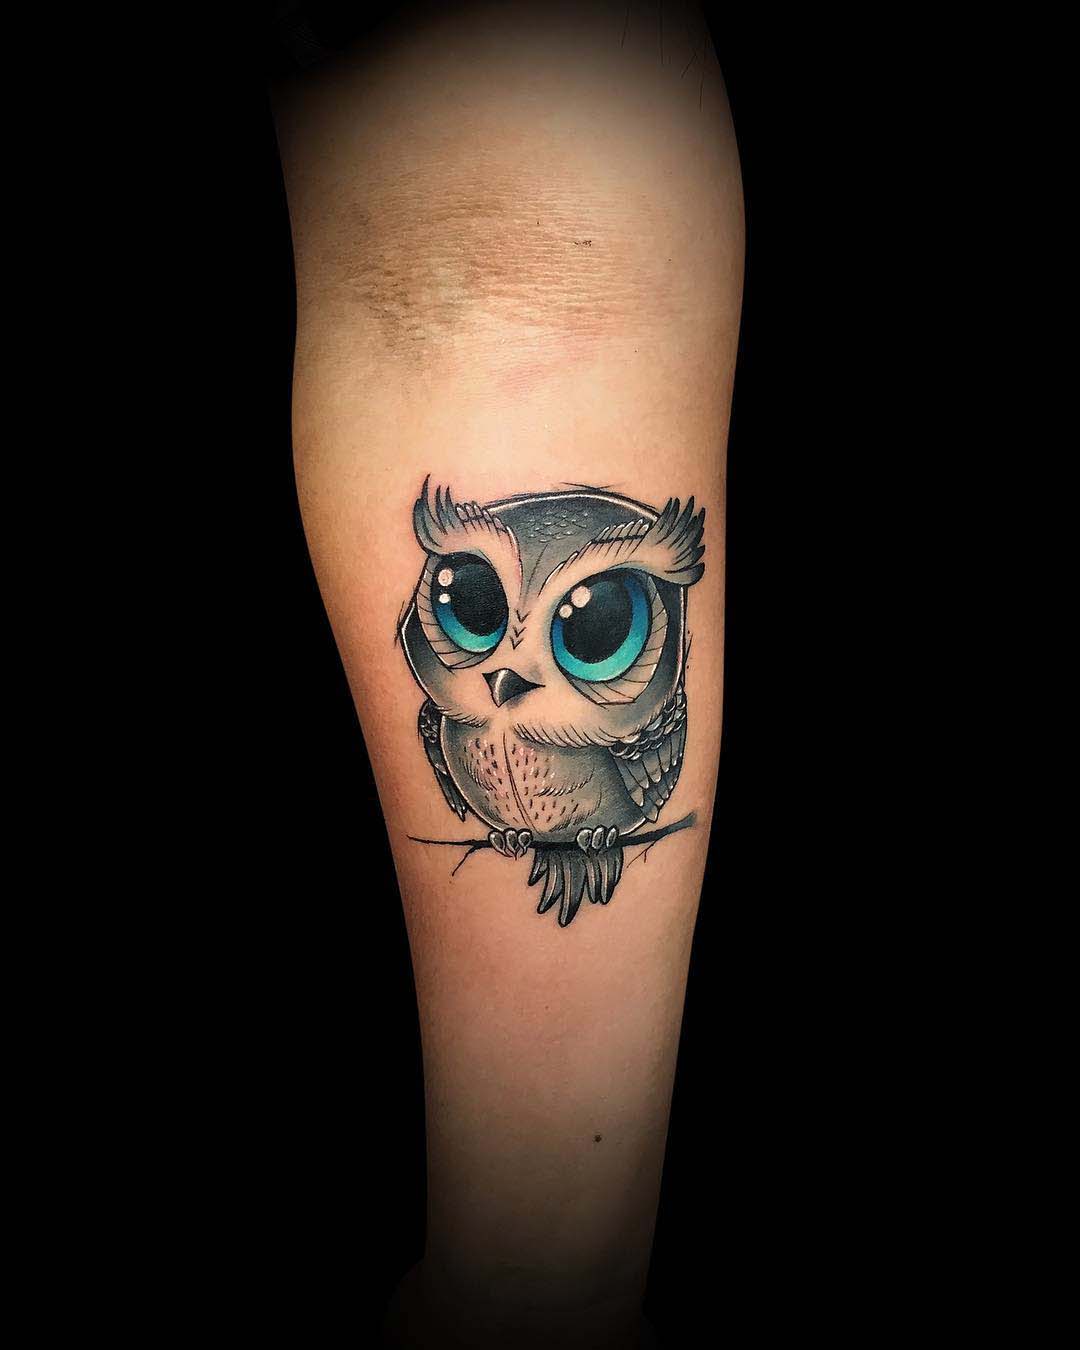 Baby Owl Tattoo - Best Tattoo Ideas Gallery